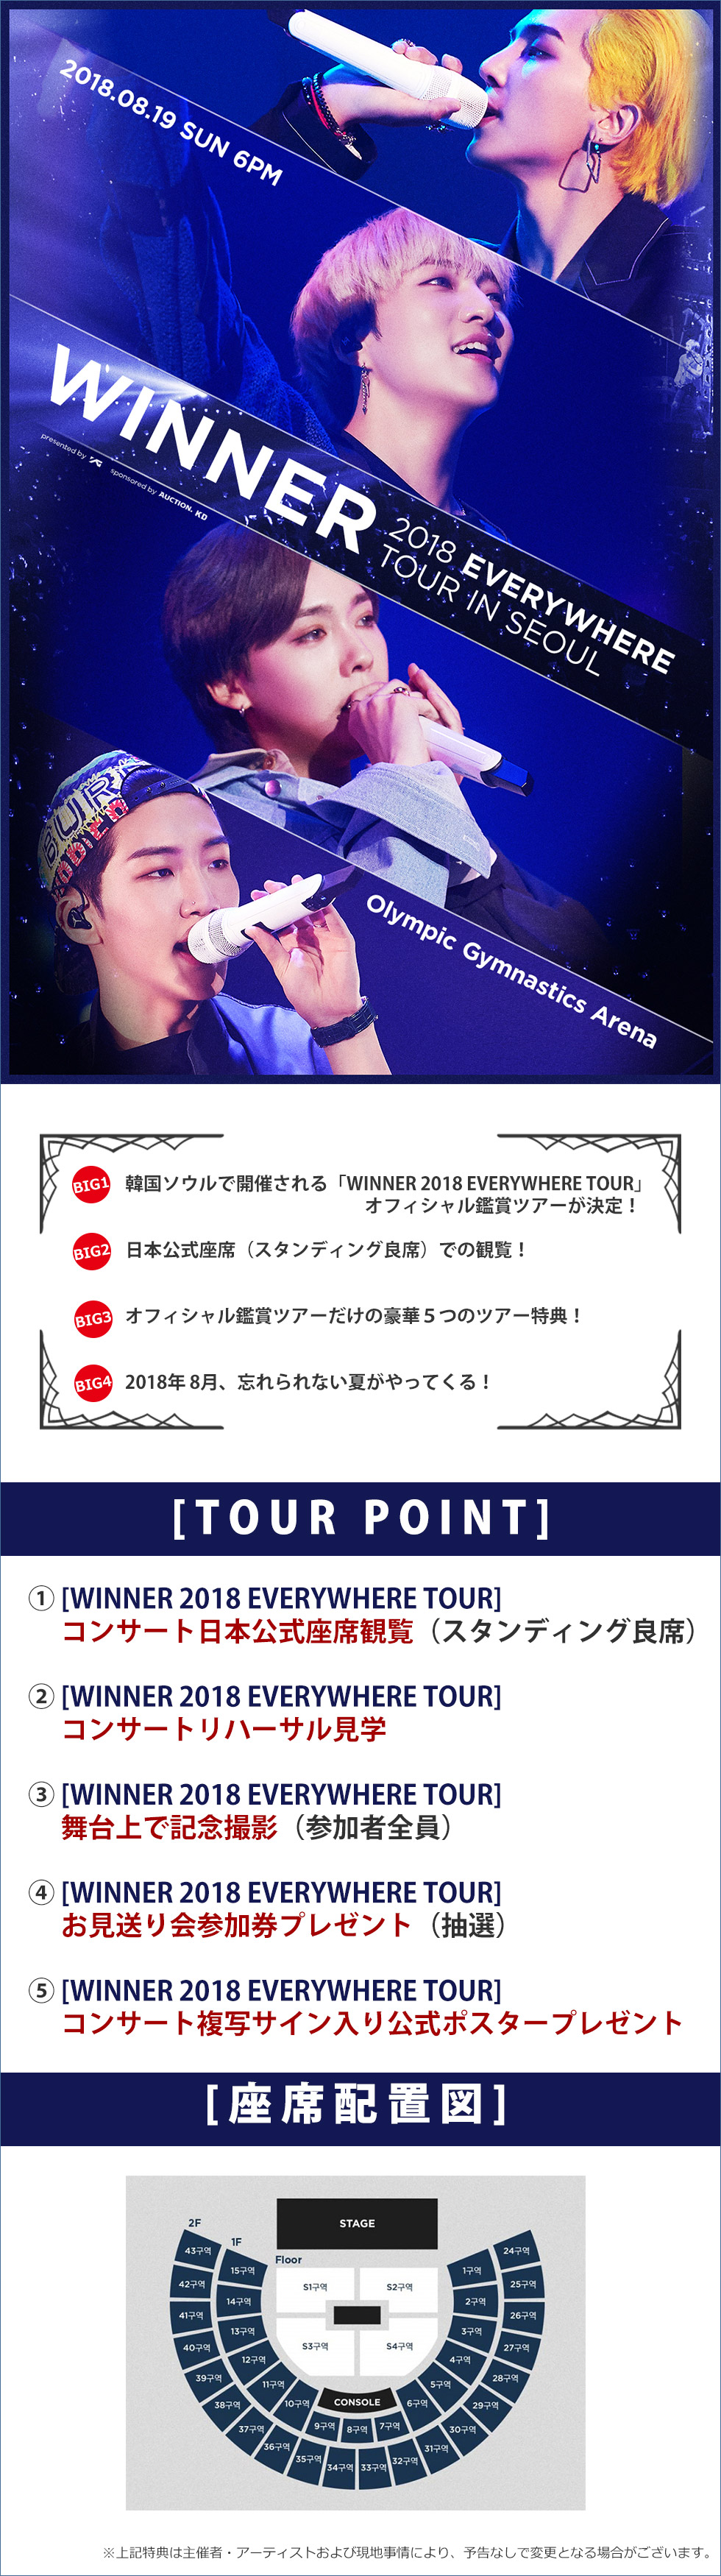 【日本公式】「WINNER 2018 EVERYWHERE TOUR」オフィシャル鑑賞ツアー